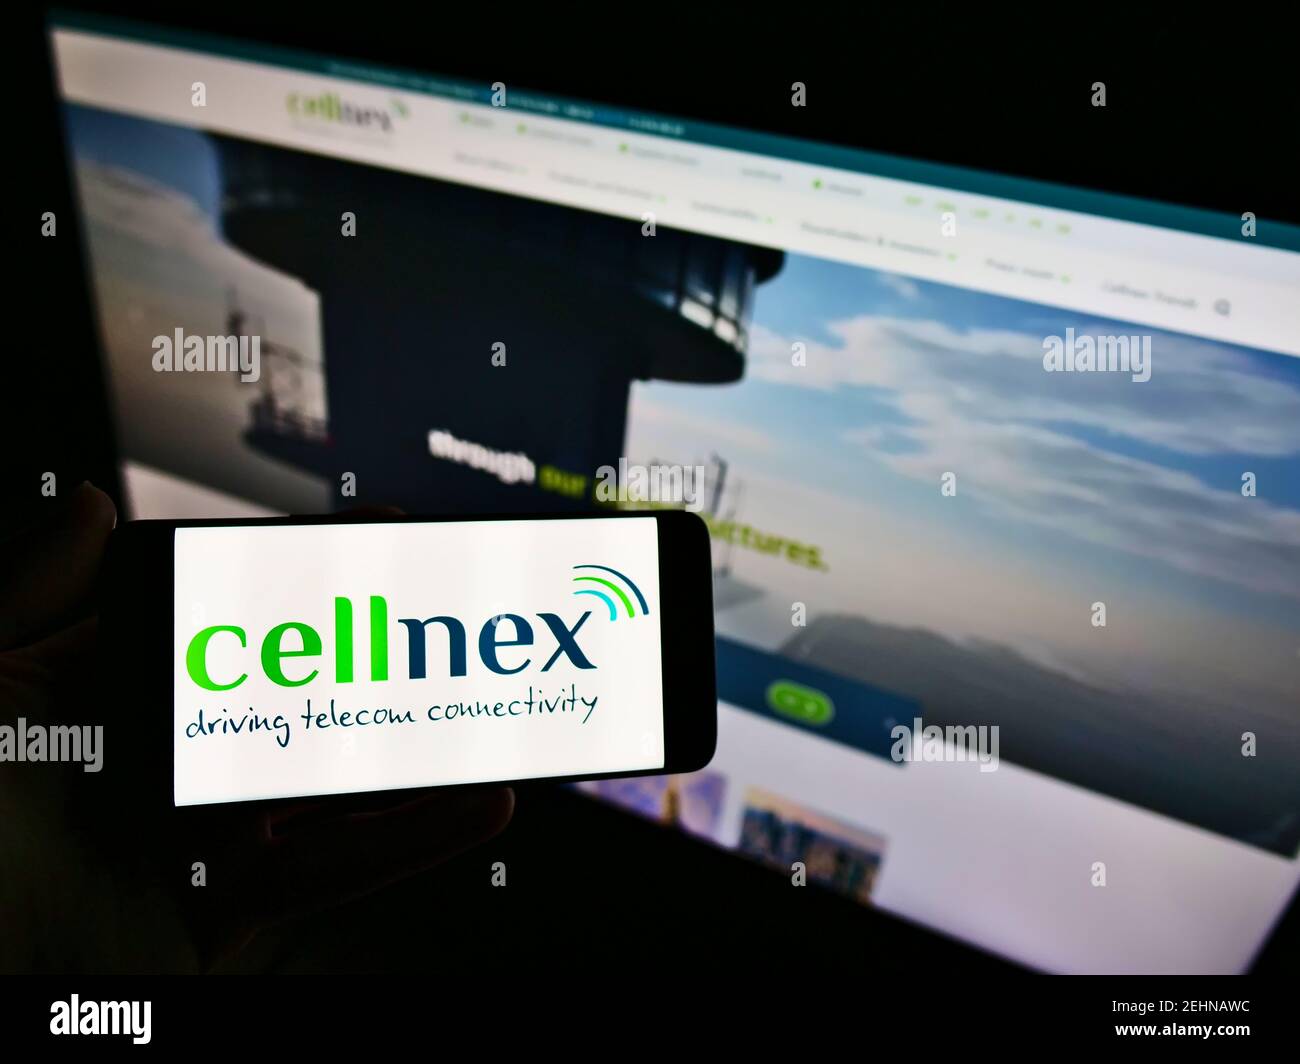 Persona che detiene smartphone con logo della società spagnola di telecomunicazioni Cellnex Telecom S.A. sullo schermo di fronte al sito web. Mettere a fuoco il display del telefono. Foto Stock